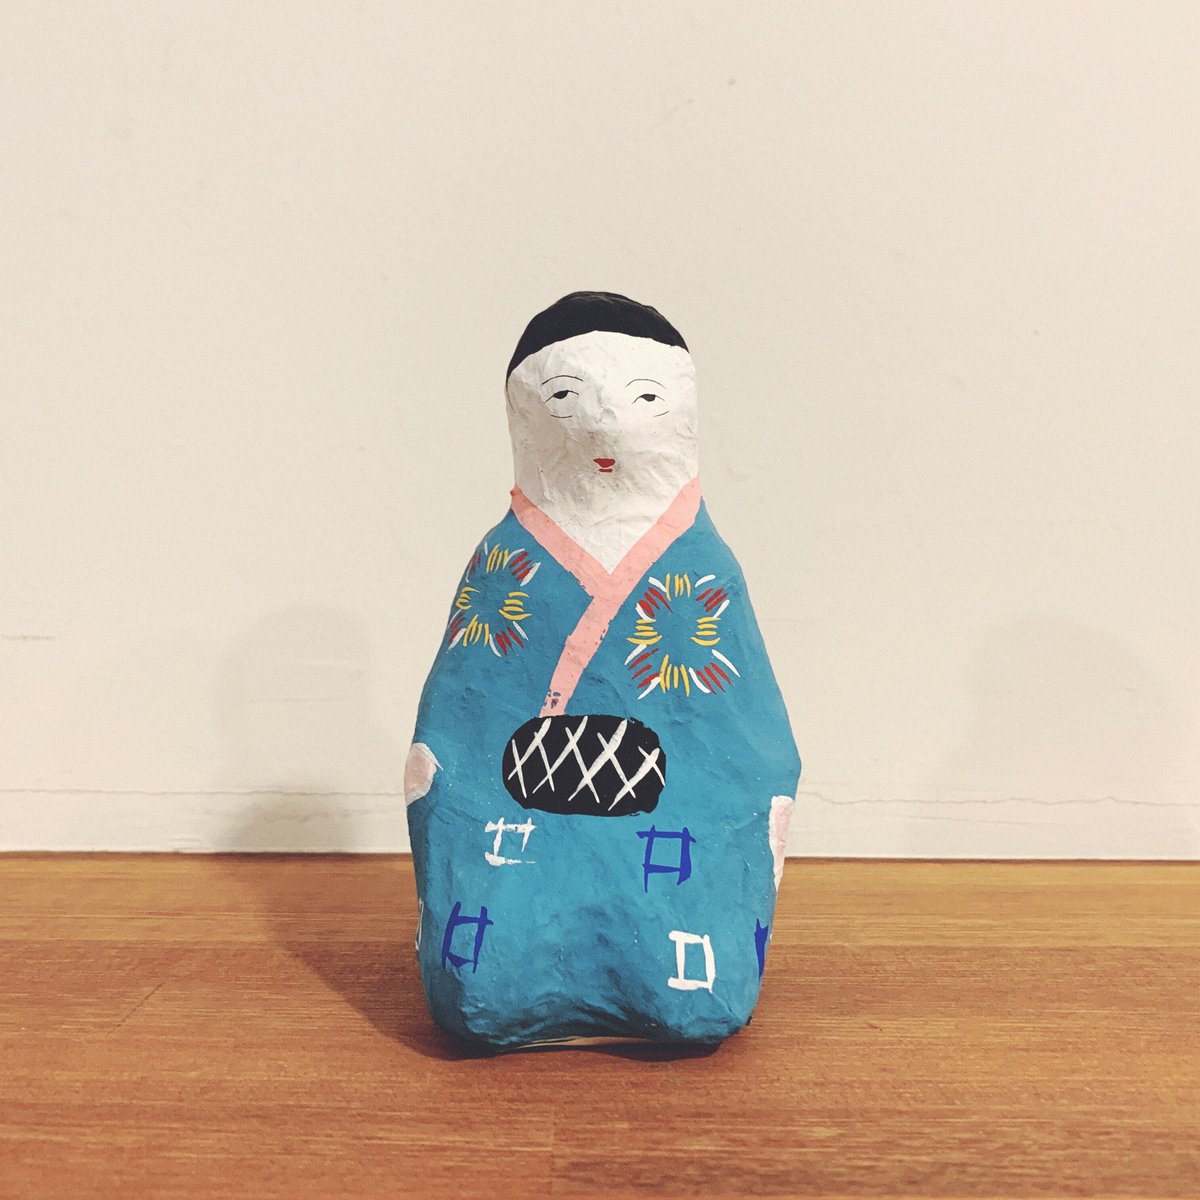 琉球郷土玩具の『風俗人形(じゅりぐぁーぶとぅき)』 | 象々の郷土玩具